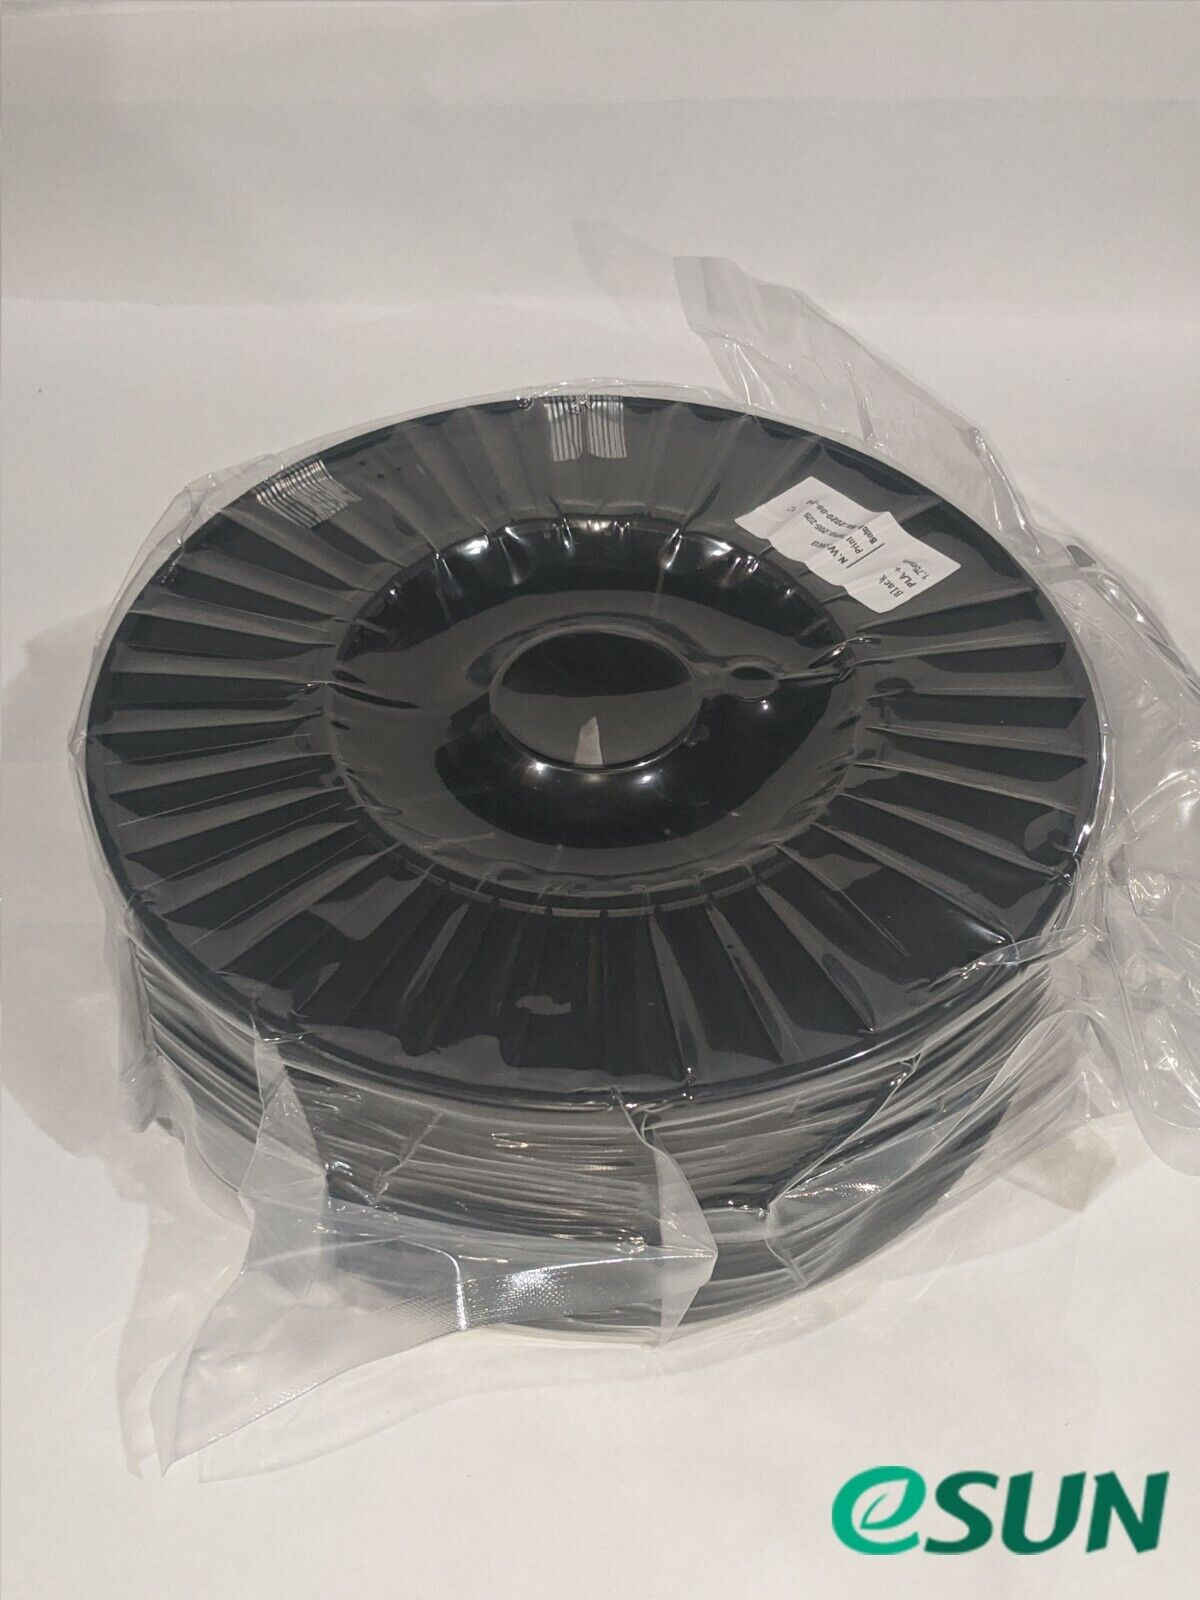 ESUN Black 3D Print Filament 2.5kg (5.5lb) 1.75mm PETG 3D Printing